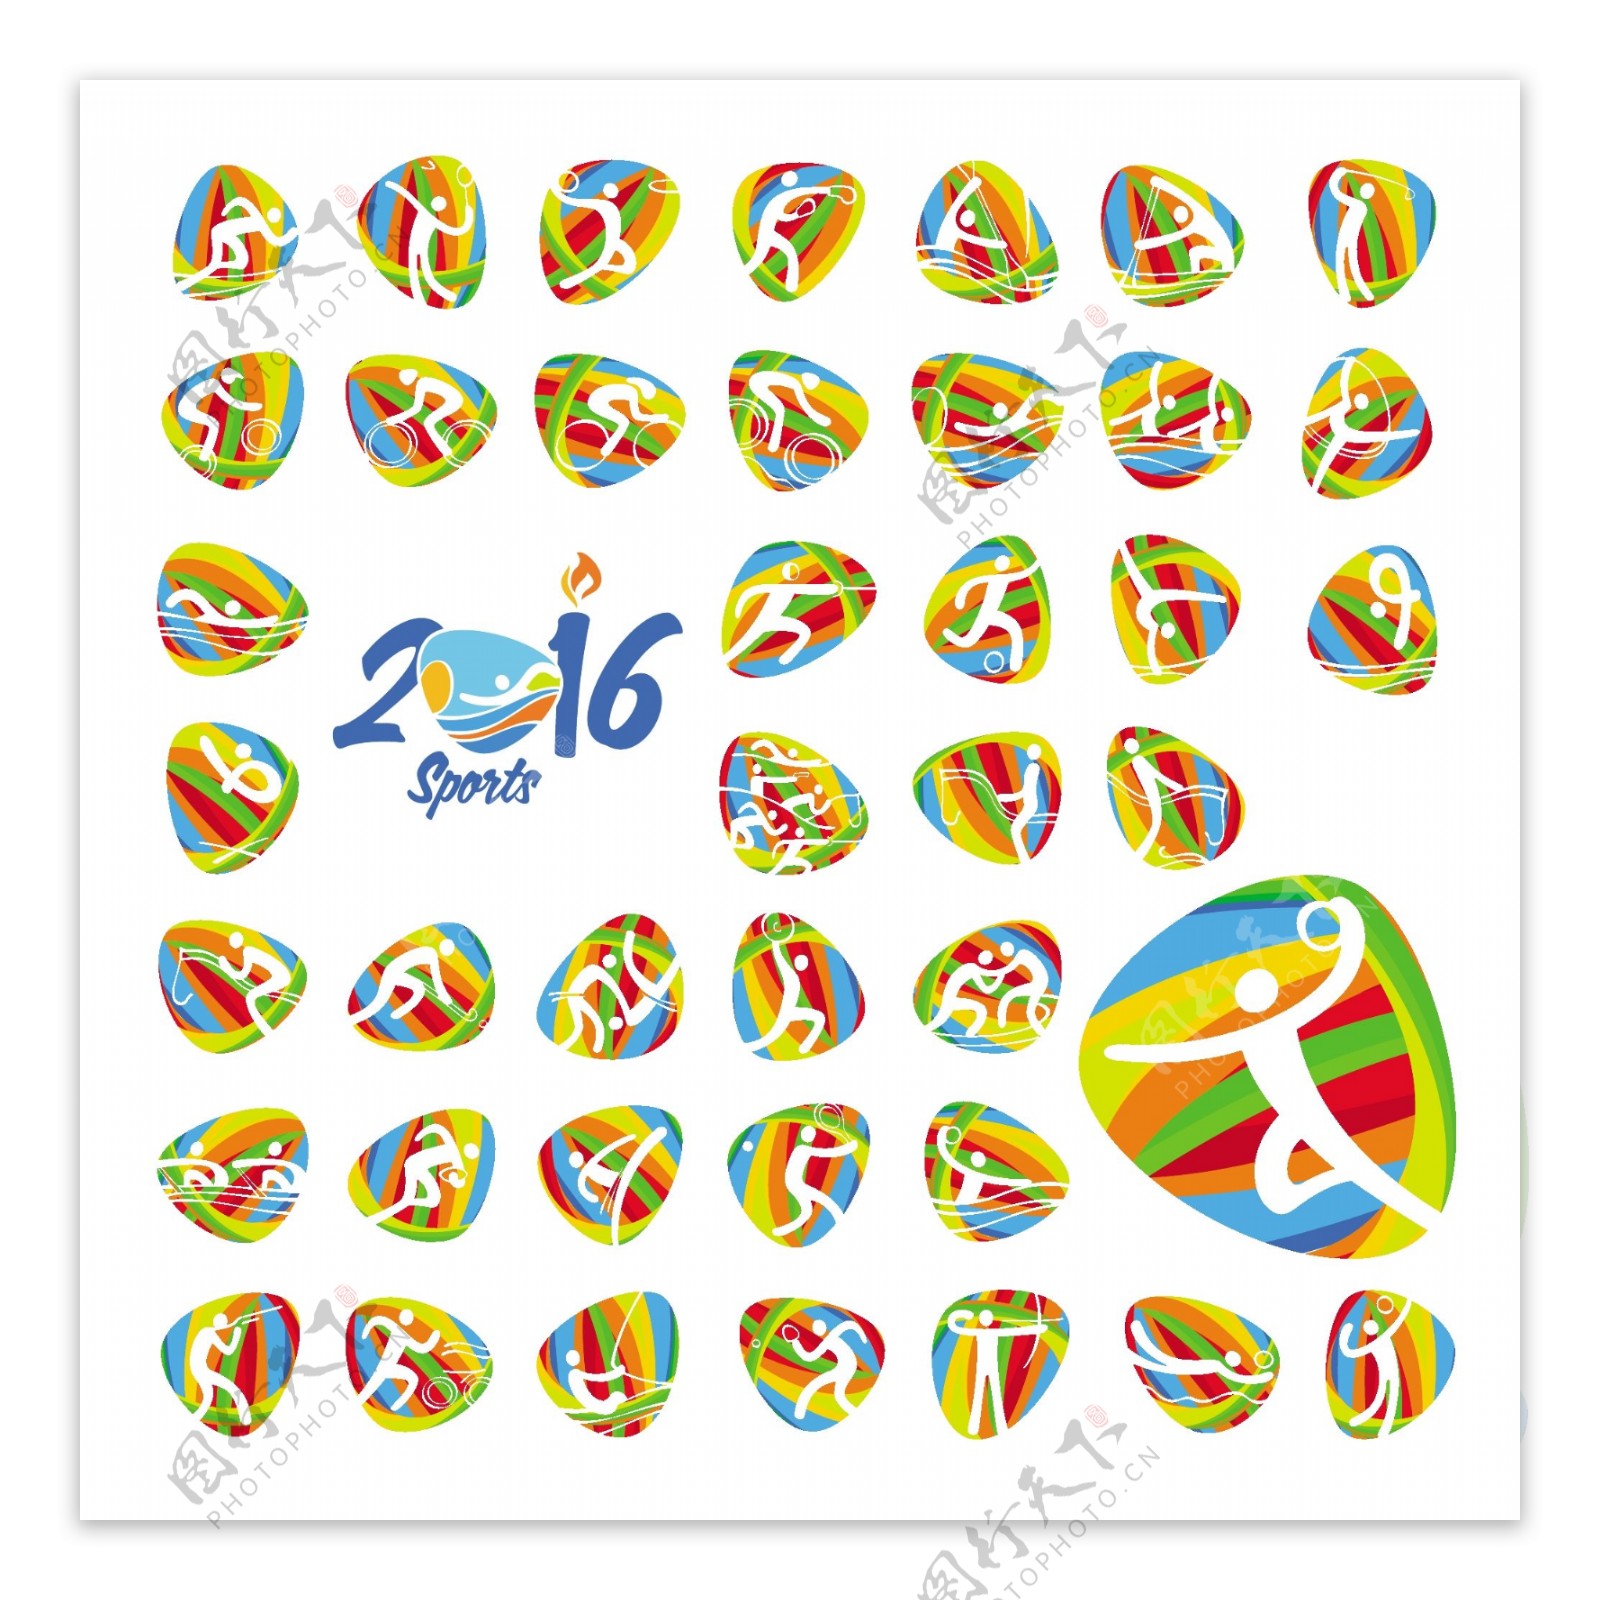 2016届夏季奥运会体育图标集